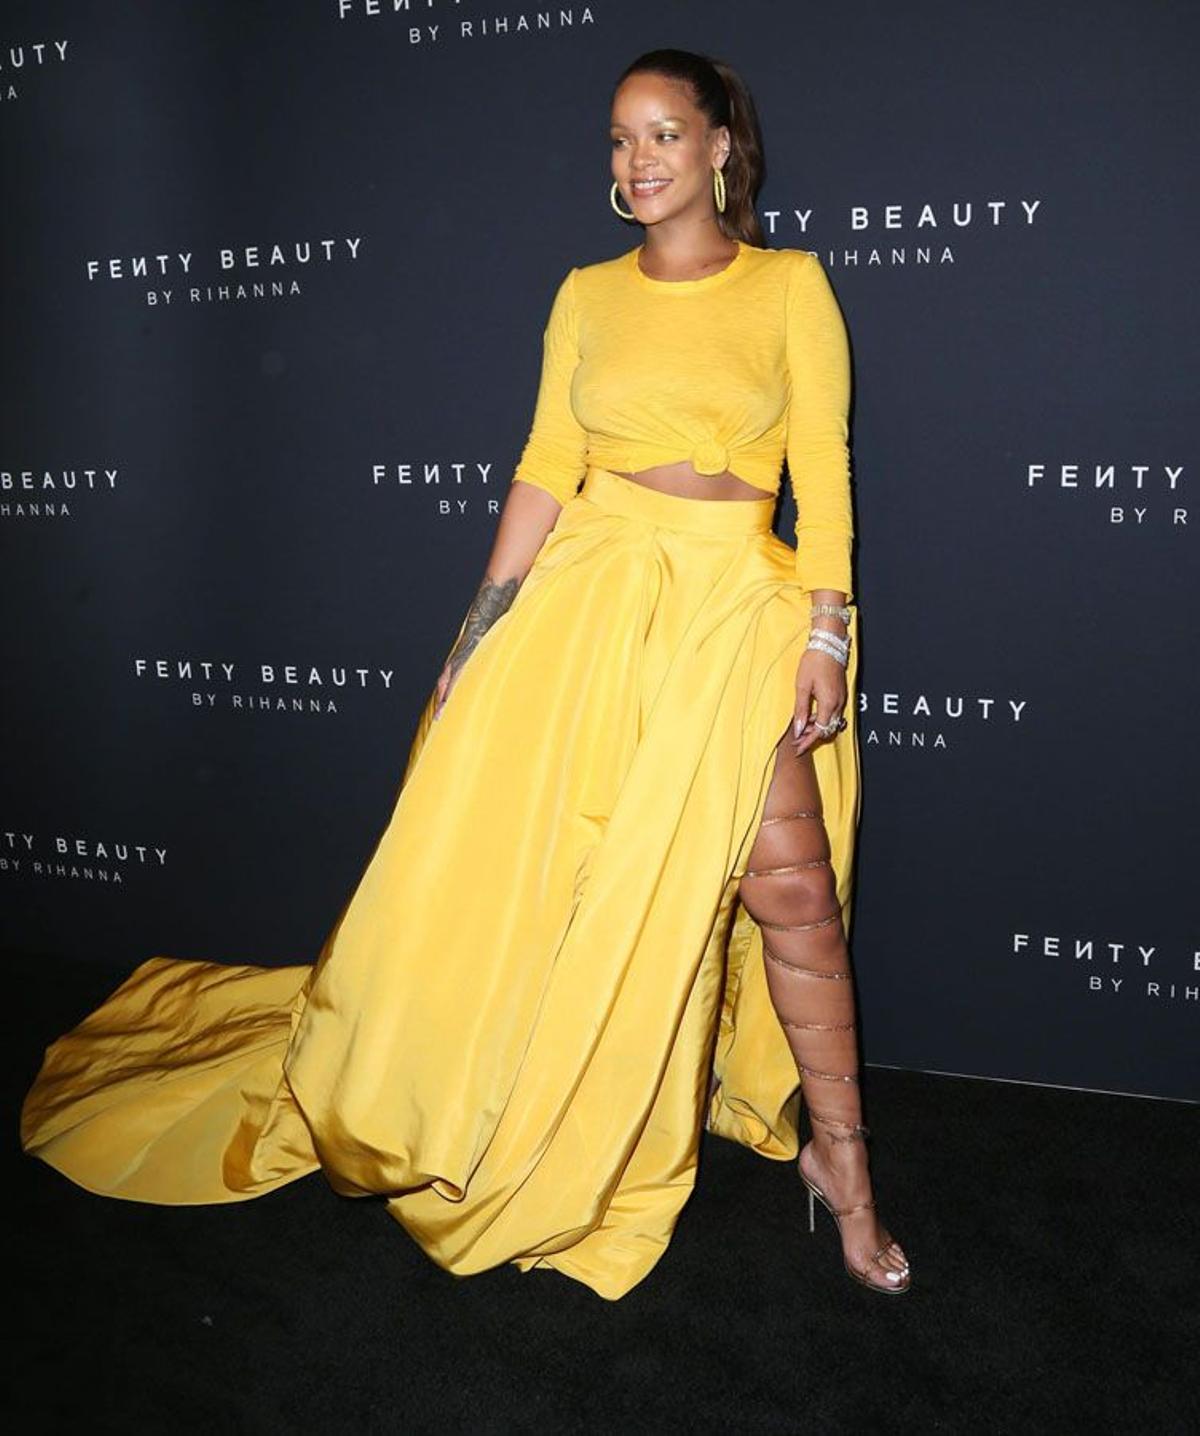 Rihanna lanza su marca de belleza en NY